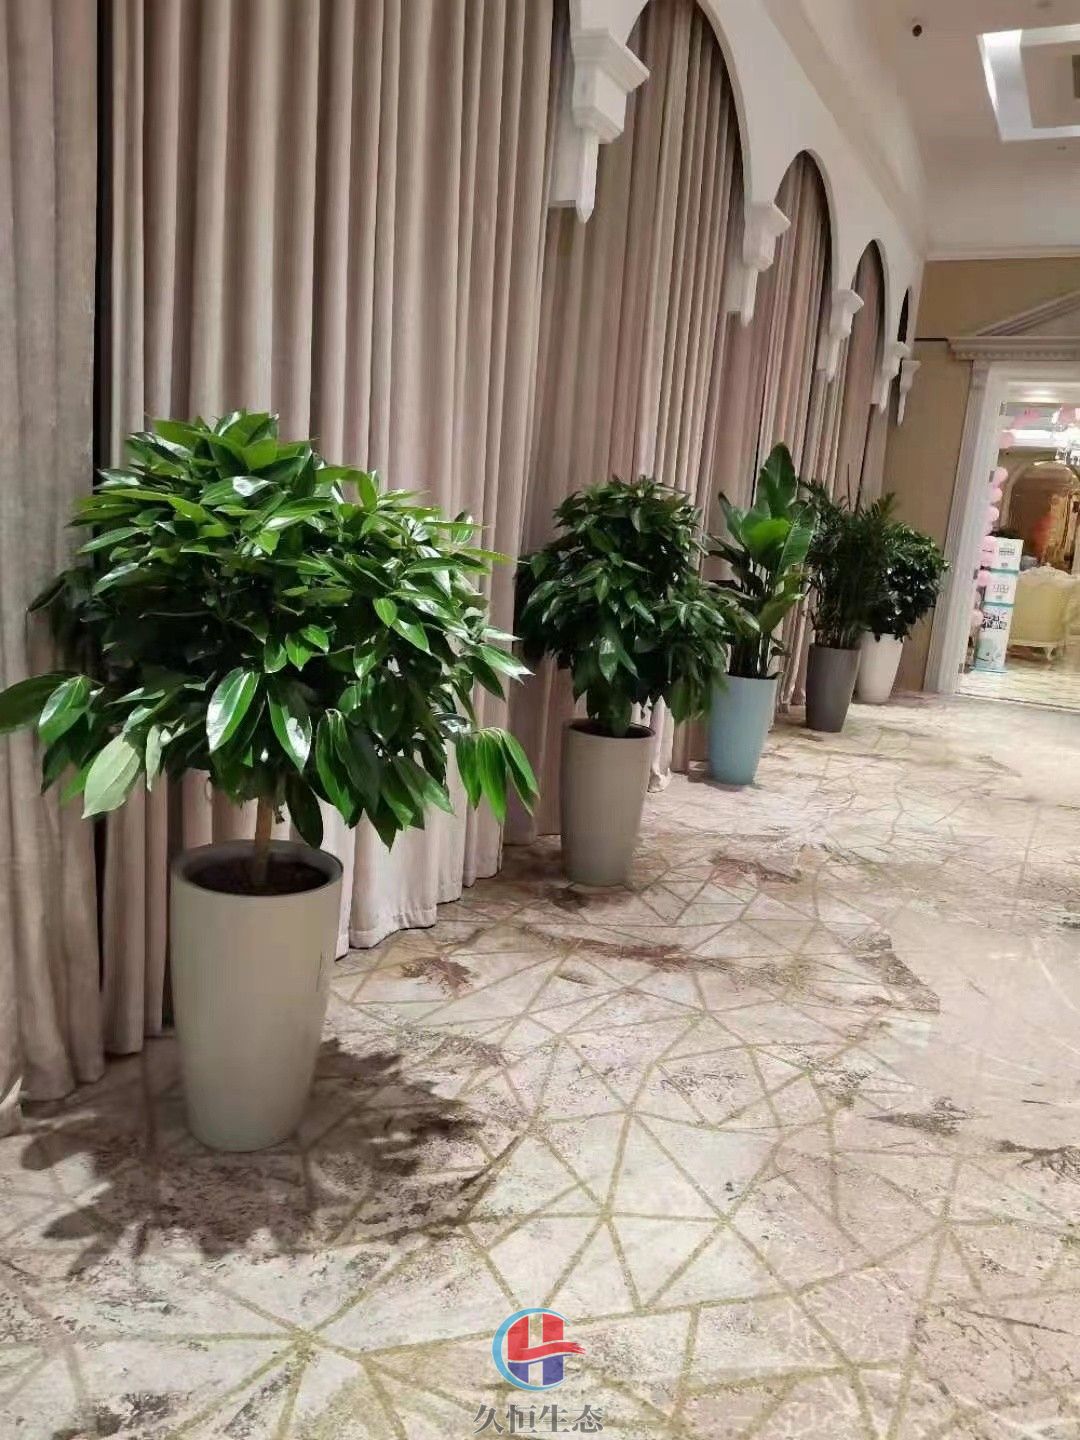 鄞州酒店走廊花卉绿植摆放